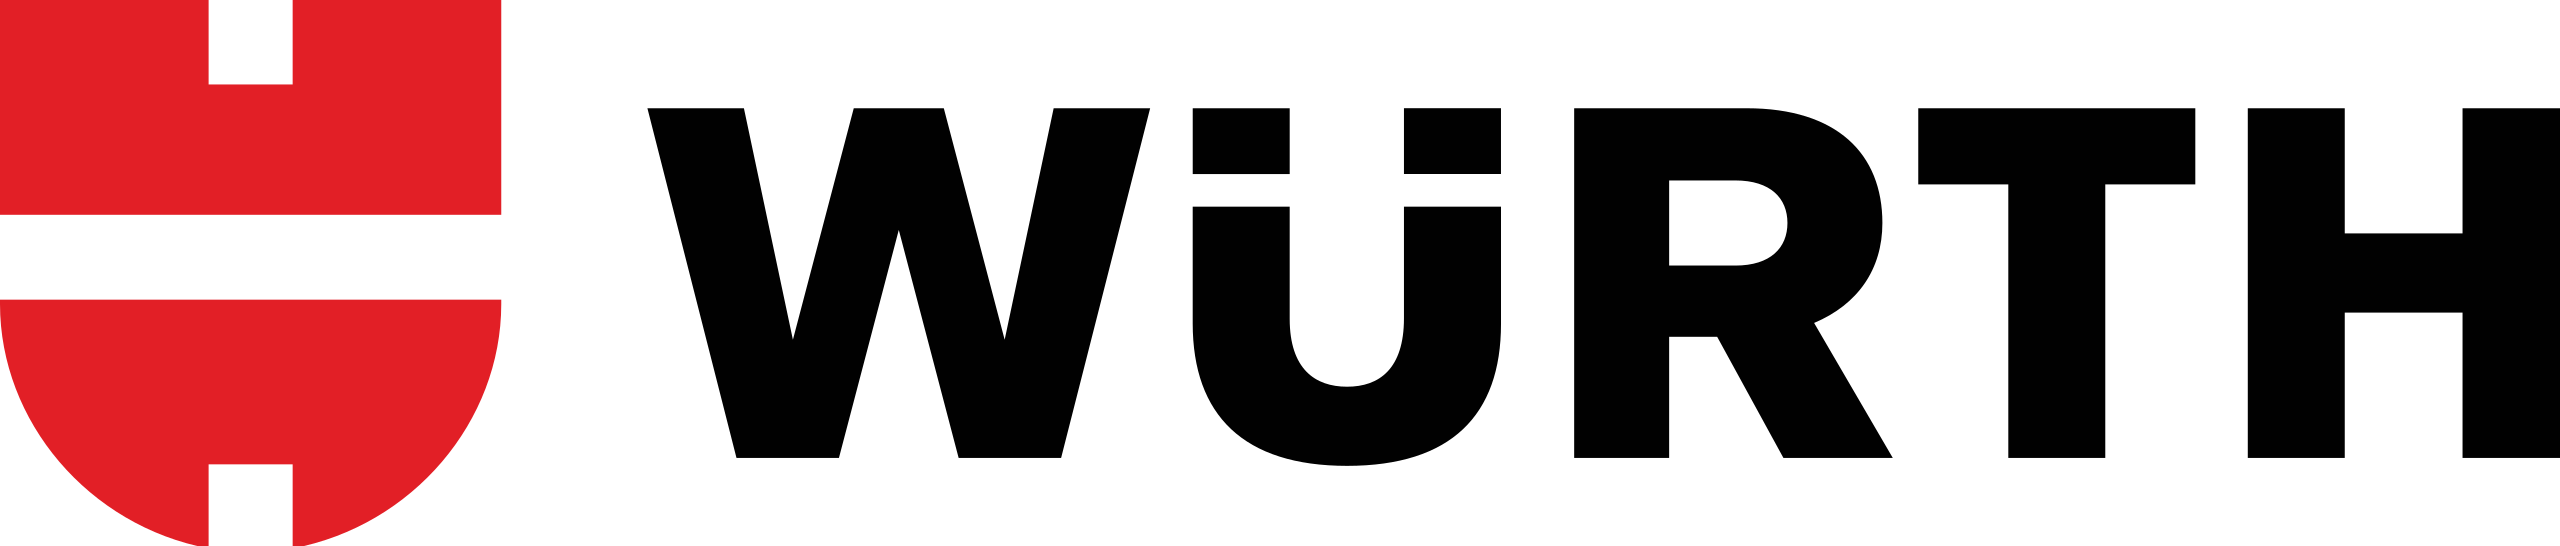 Wurth - logo